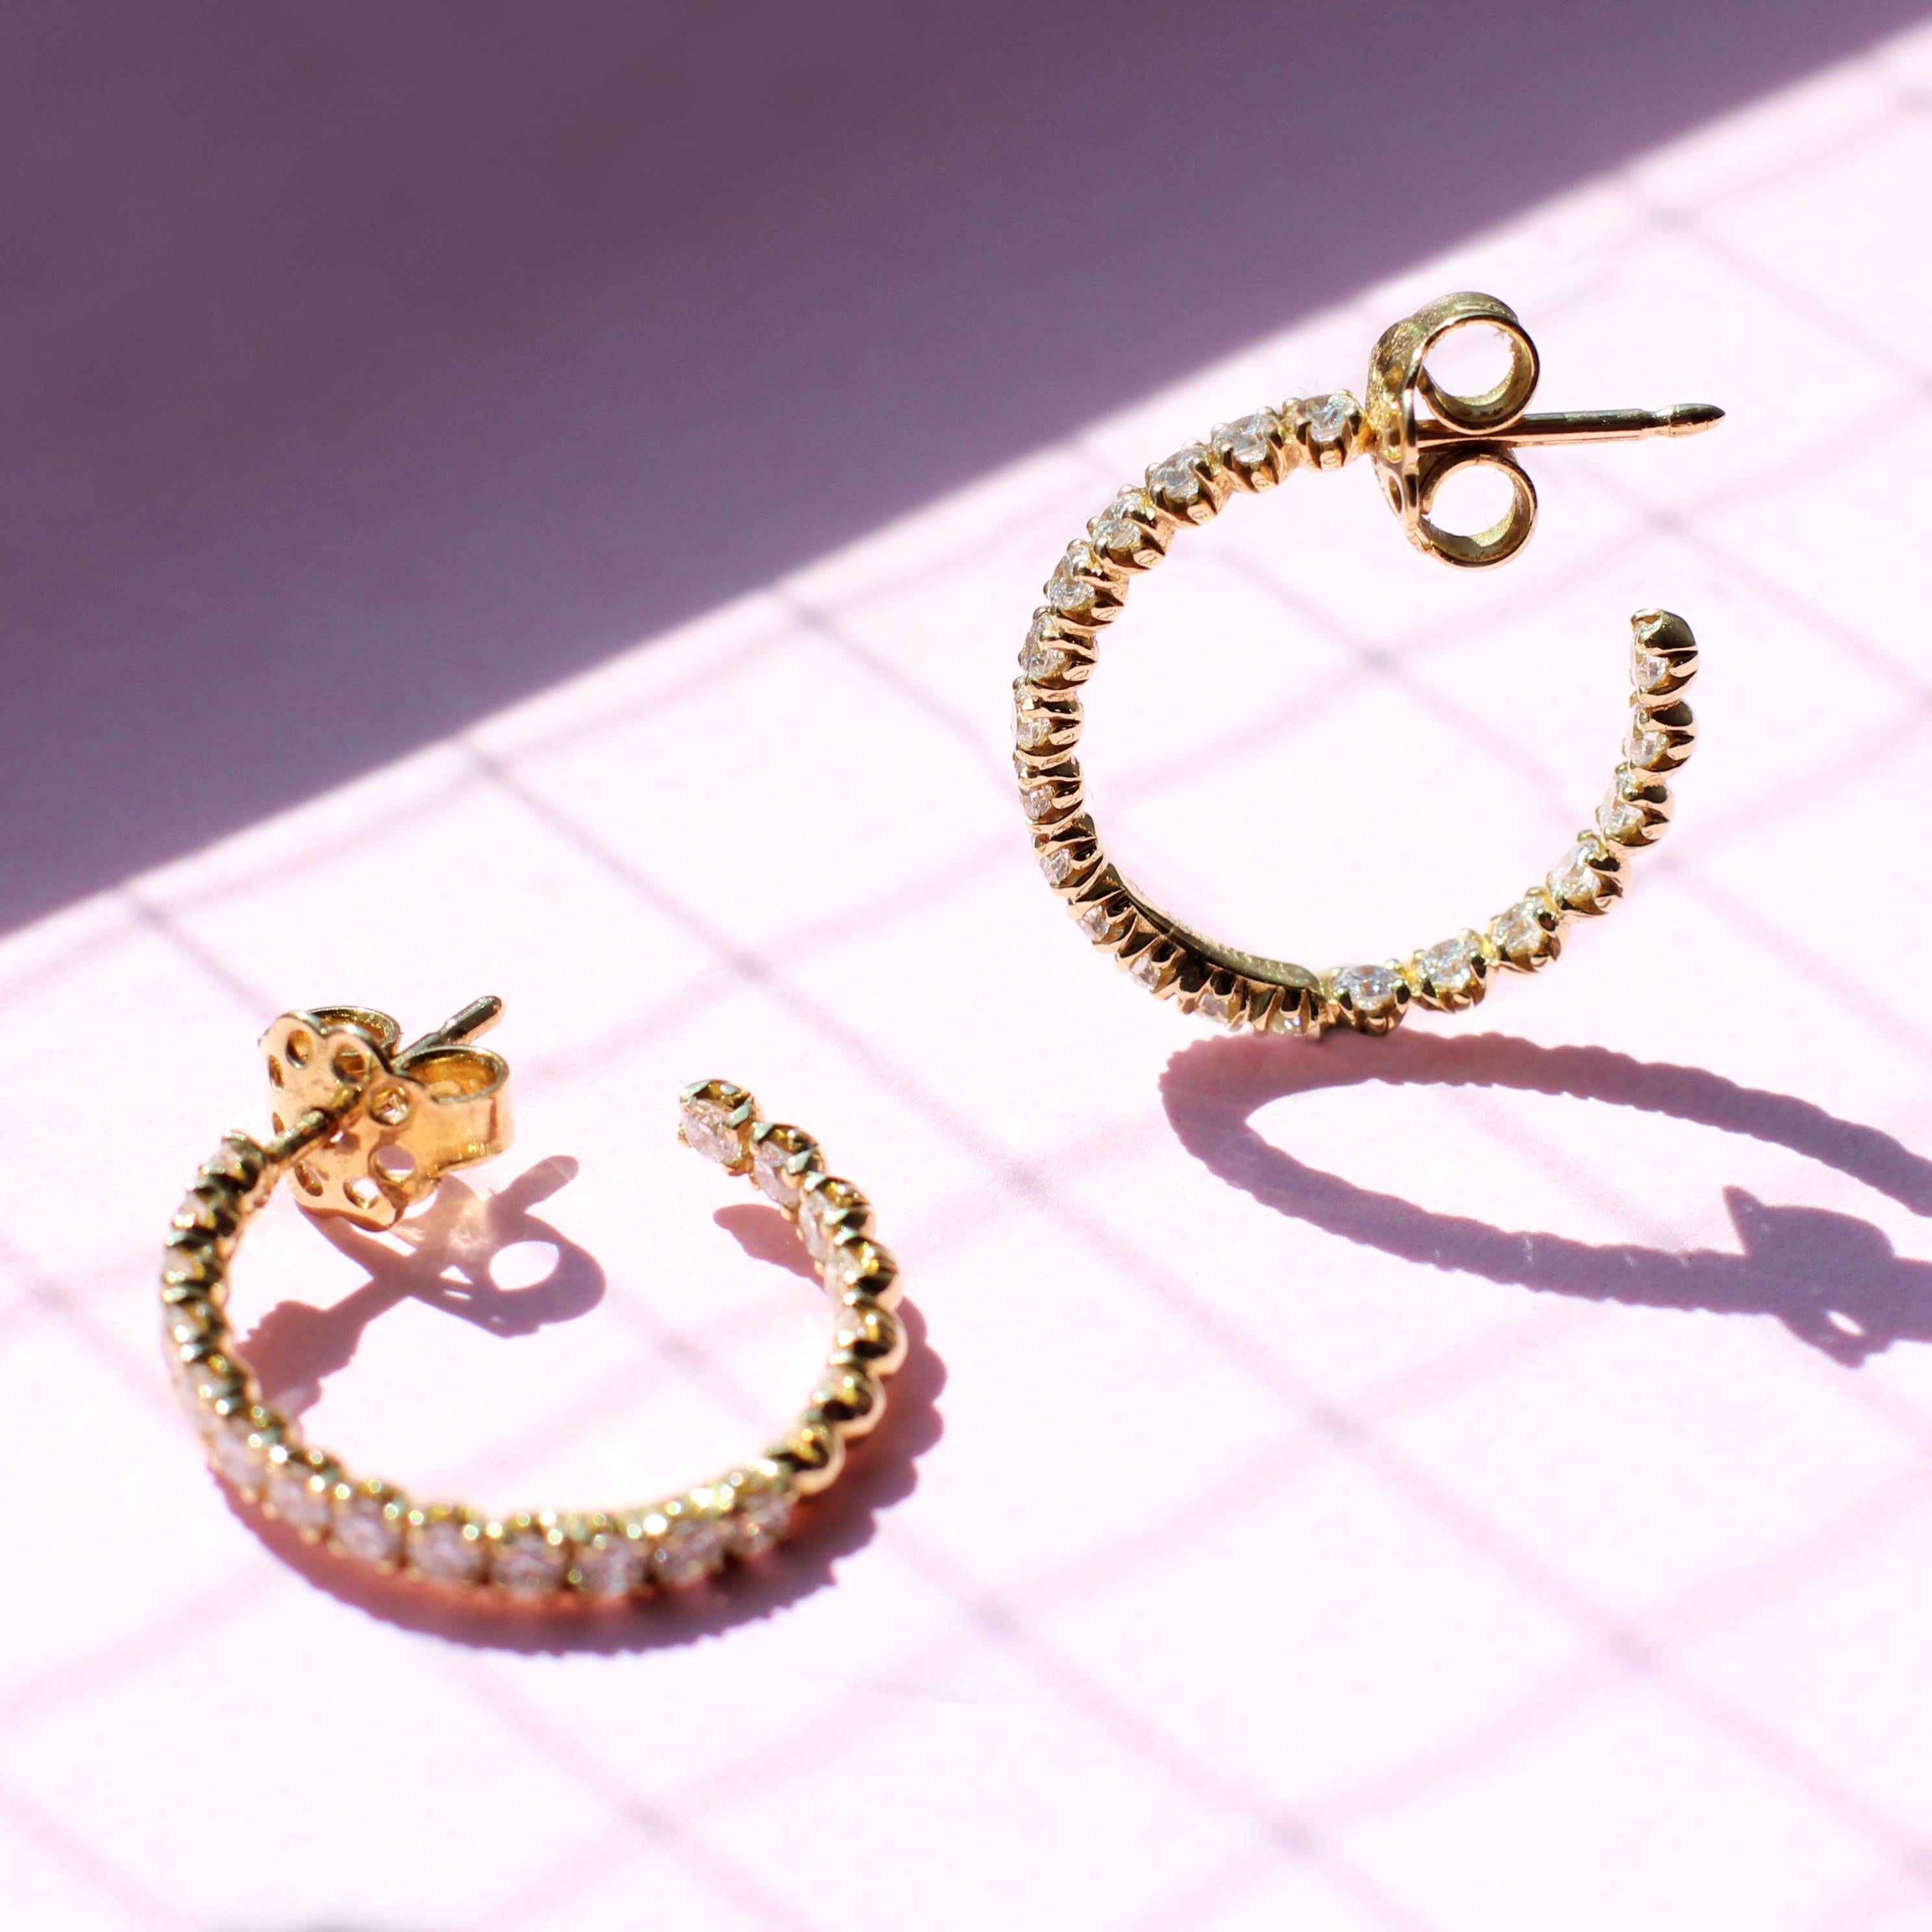 Des anneaux d'éternité en or jaune 18 carats et en diamants blancs au design versatile et particulier, qui mettent en valeur les diamants sertis à l'avant et à l'arrière pour une vue splendide sur les diamants uniquement. Ces anneaux attireront tous